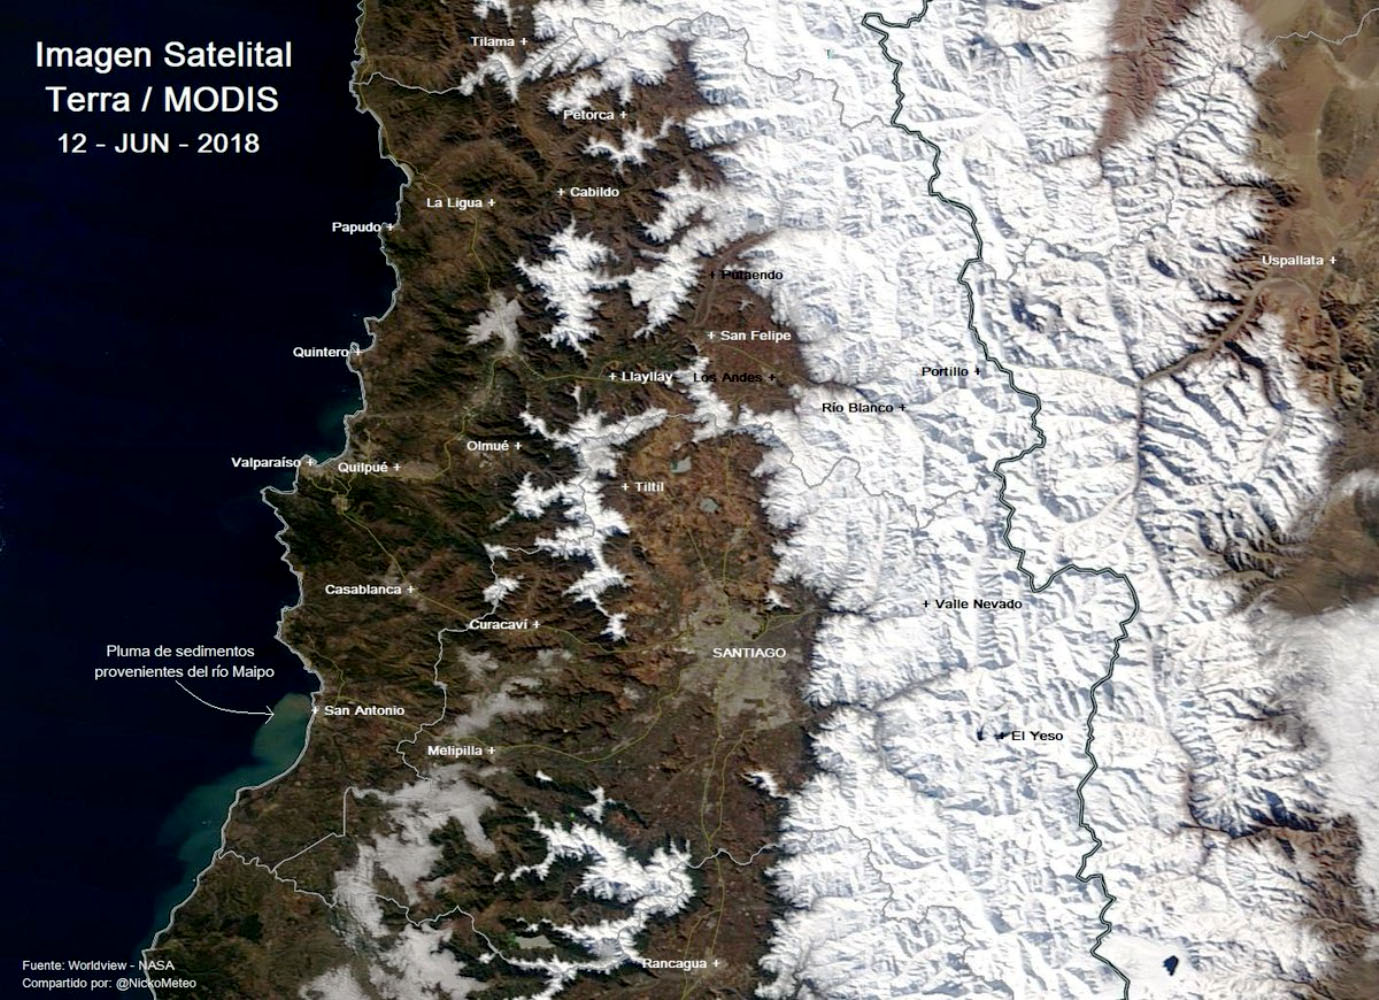 UPLA desarrollará atlas de incendios forestales de la región de Valparaíso con imágenes satelitales